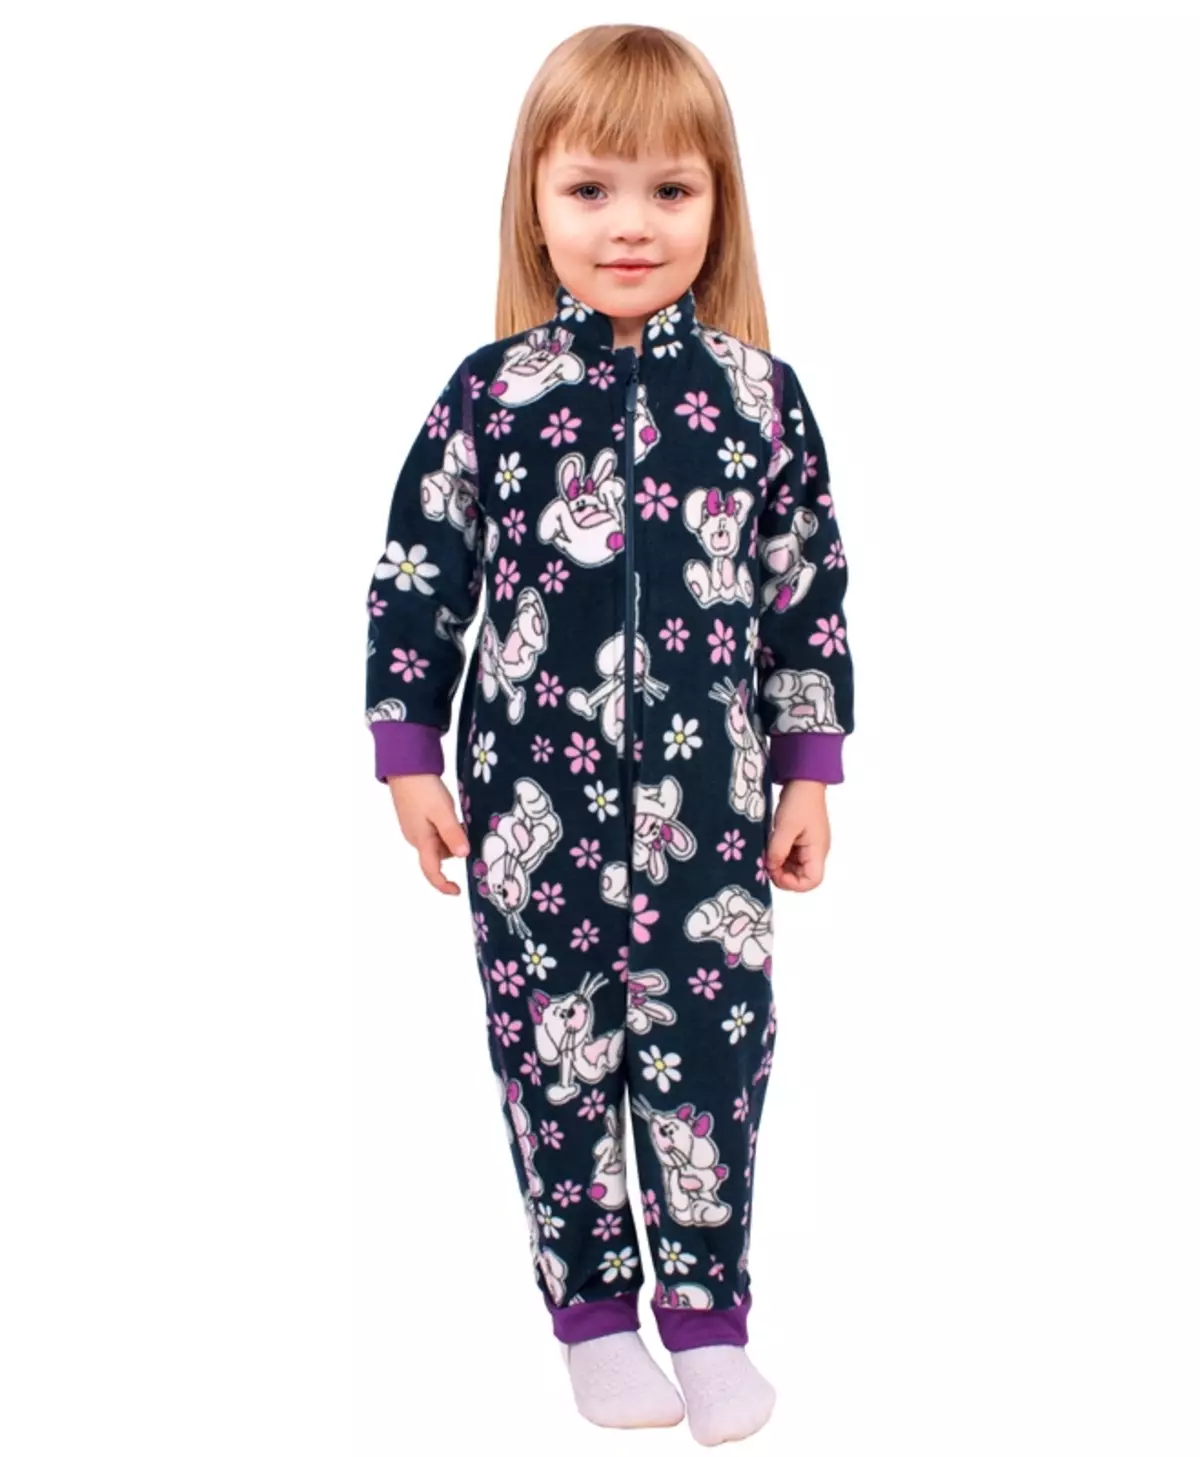 Dječja toplinska rublja Lysy: Karakteristike i raspon modela za djecu. Kako nositi i pažljivo brinuti? 1434_12